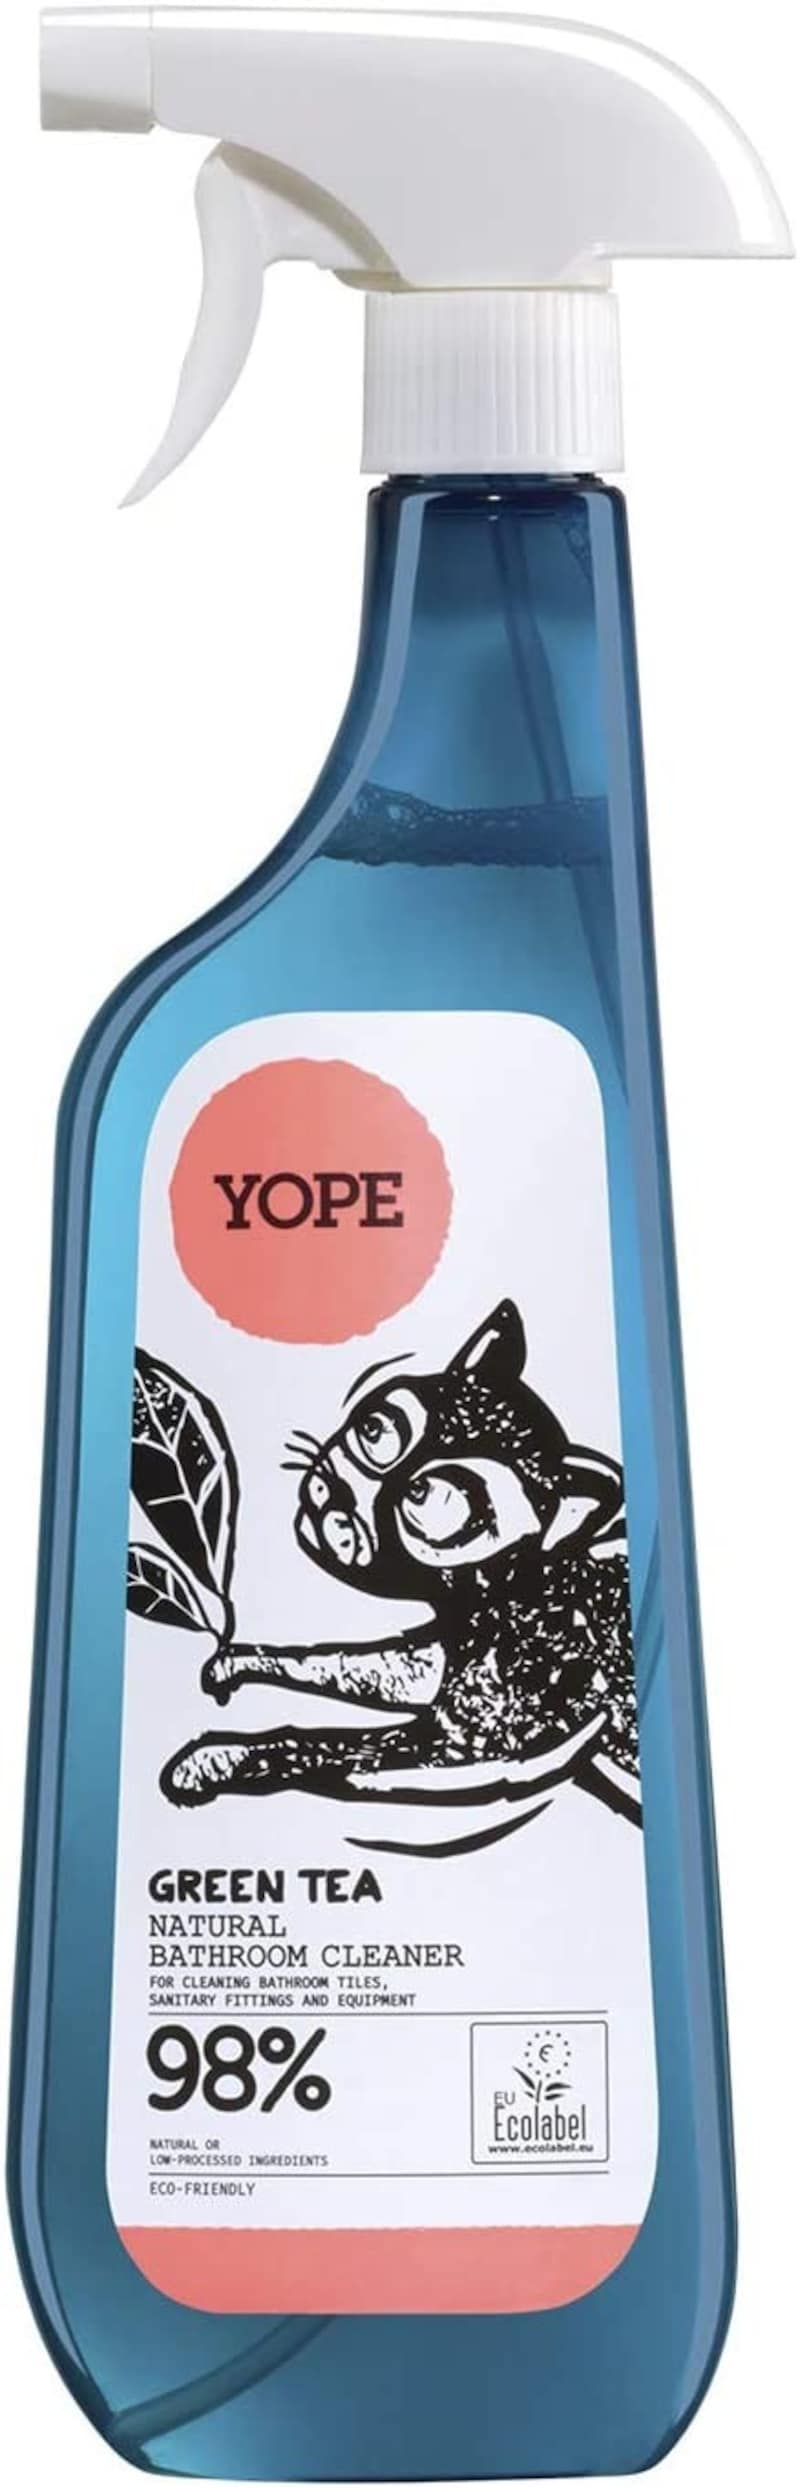 Yope,ナチュラル バスルームクリーナー グリーンティーの香り